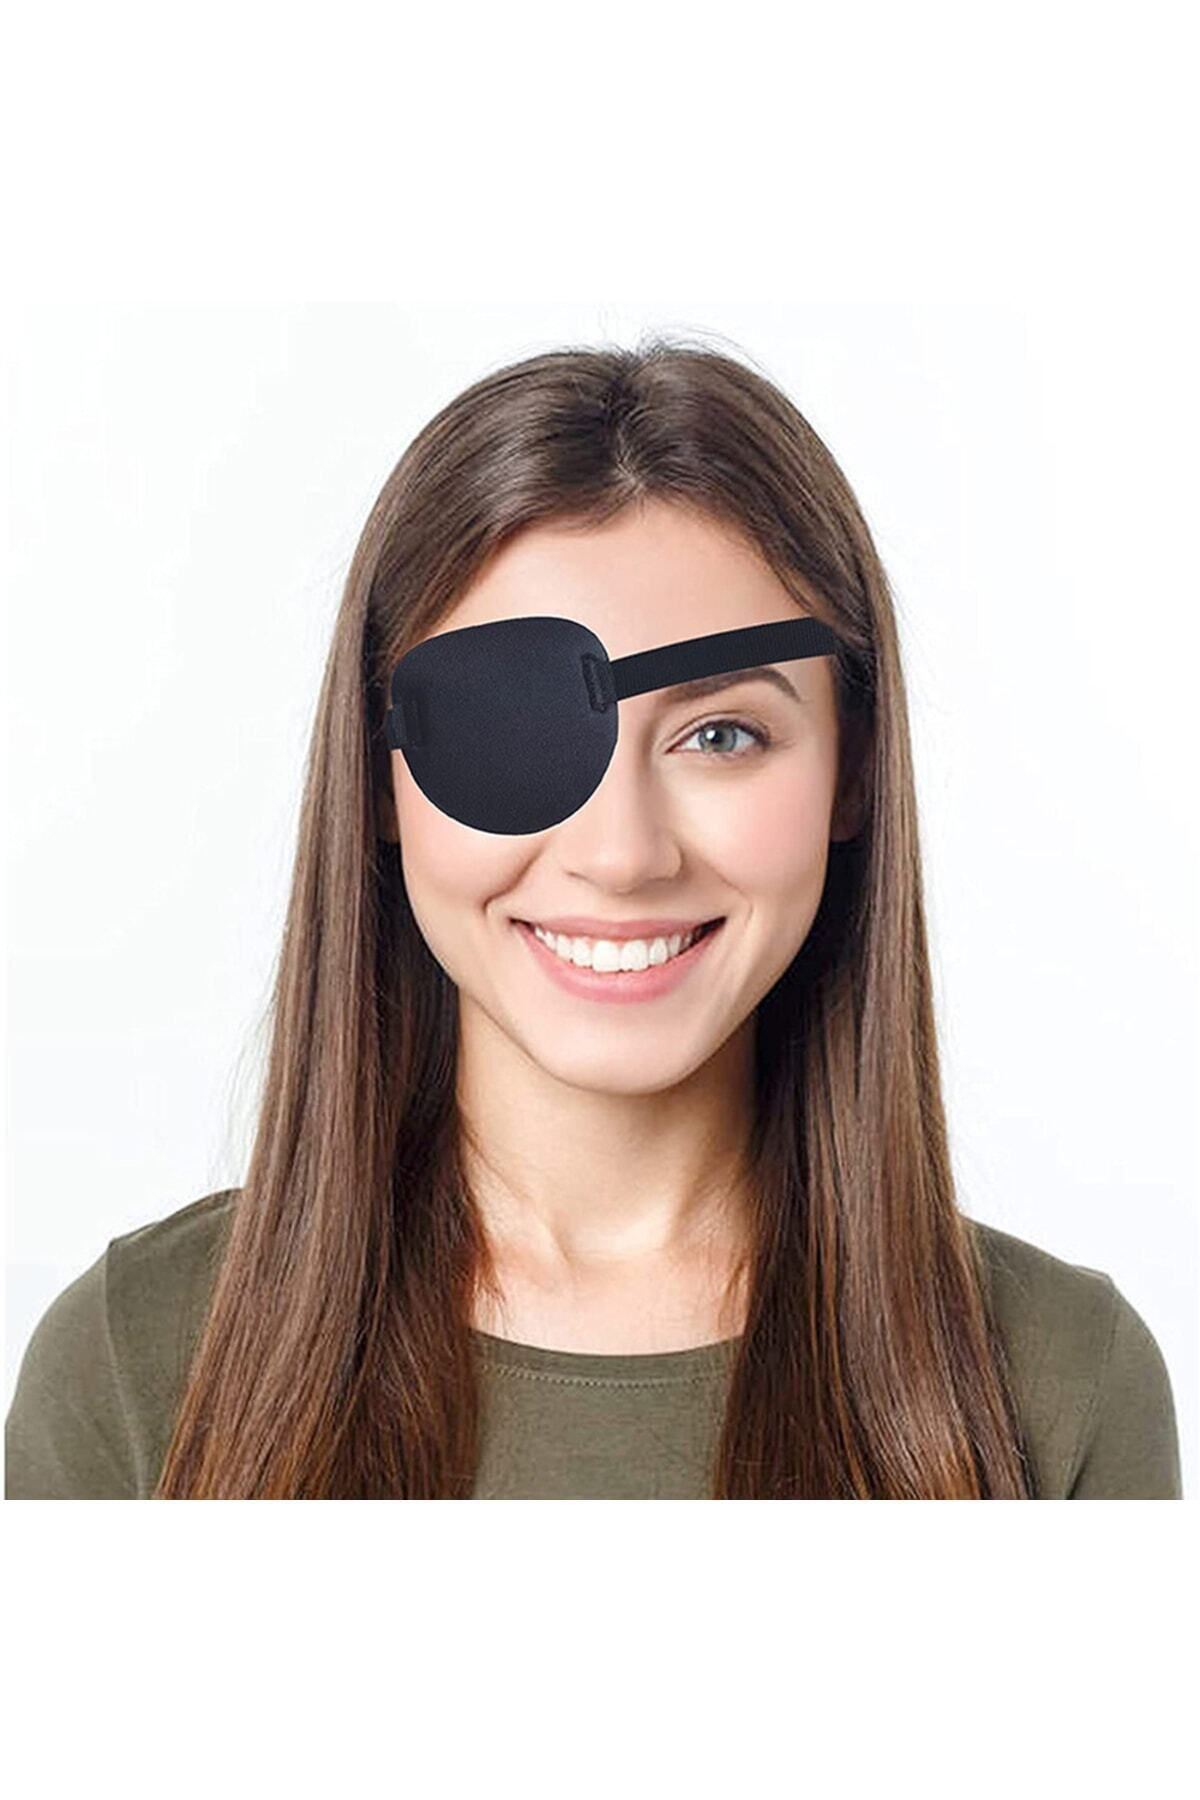 ARWEX Göz Kapama Bandı – Tek Göz Korsan Bandı – Göz Bandajı – Göz Tembelliği Bandı – Göz Pedi – Göz Bandı